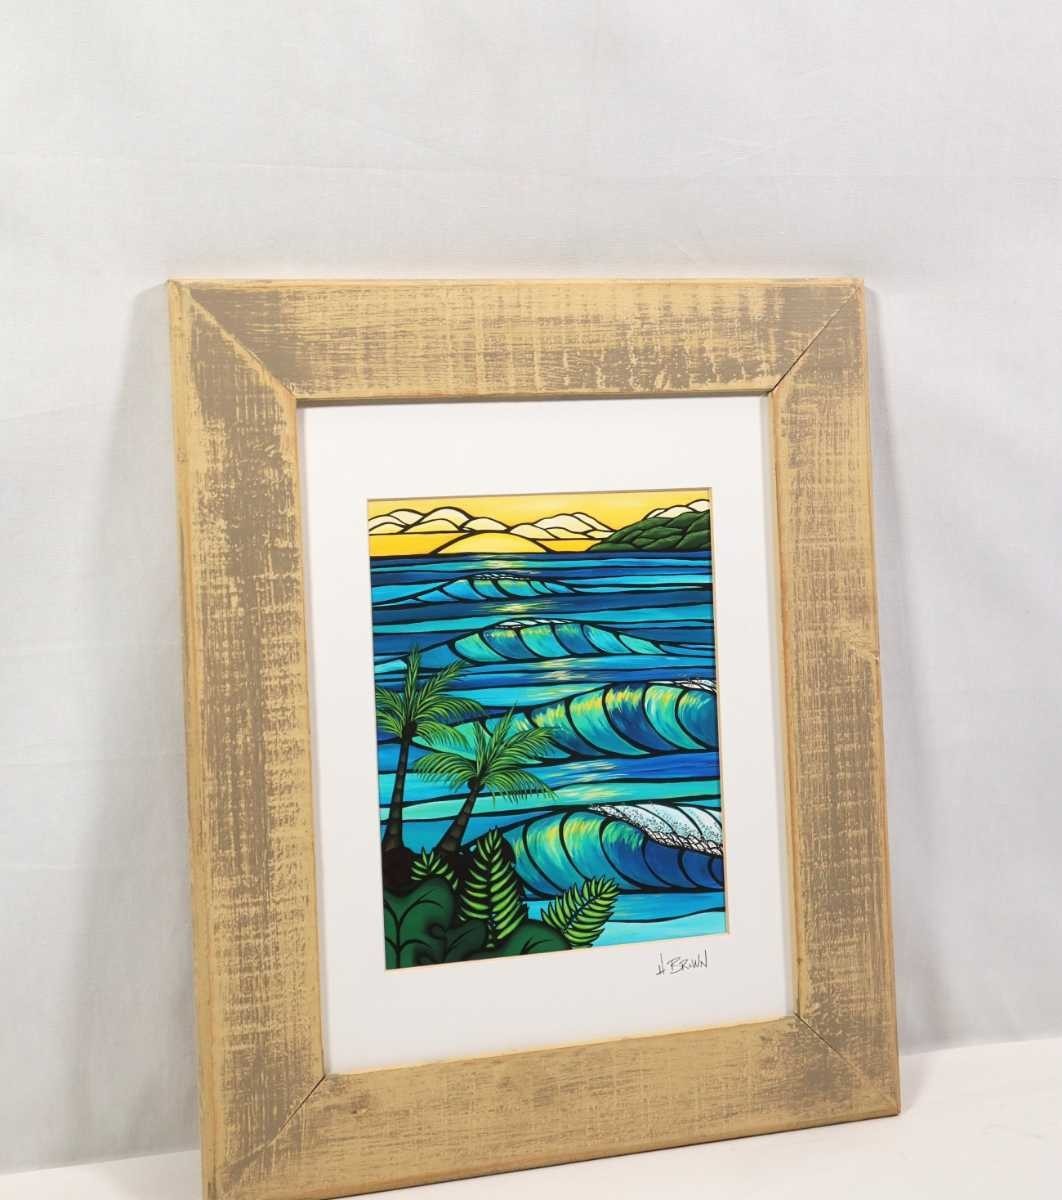 真作 ヘザー・ブラウン アートプリント「sunset swell」画20×25cm 米国作家 ハワイ在住 サーフアート 単純化した構図 色彩豊かな配色 6217_画像8